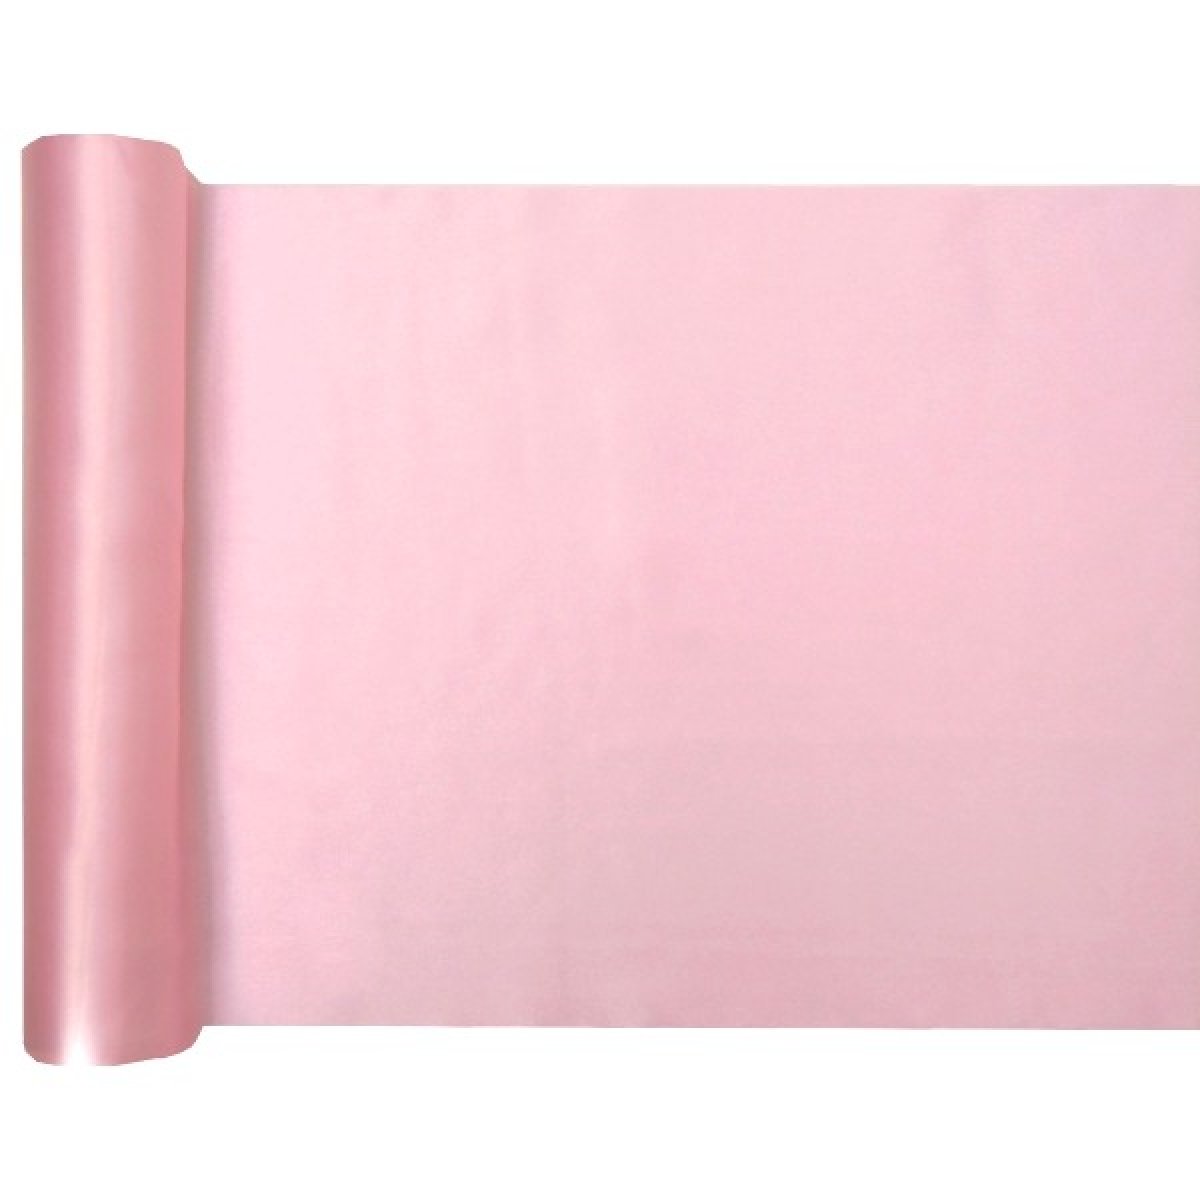 Chemin de table rose nacré 5m x 28 cm